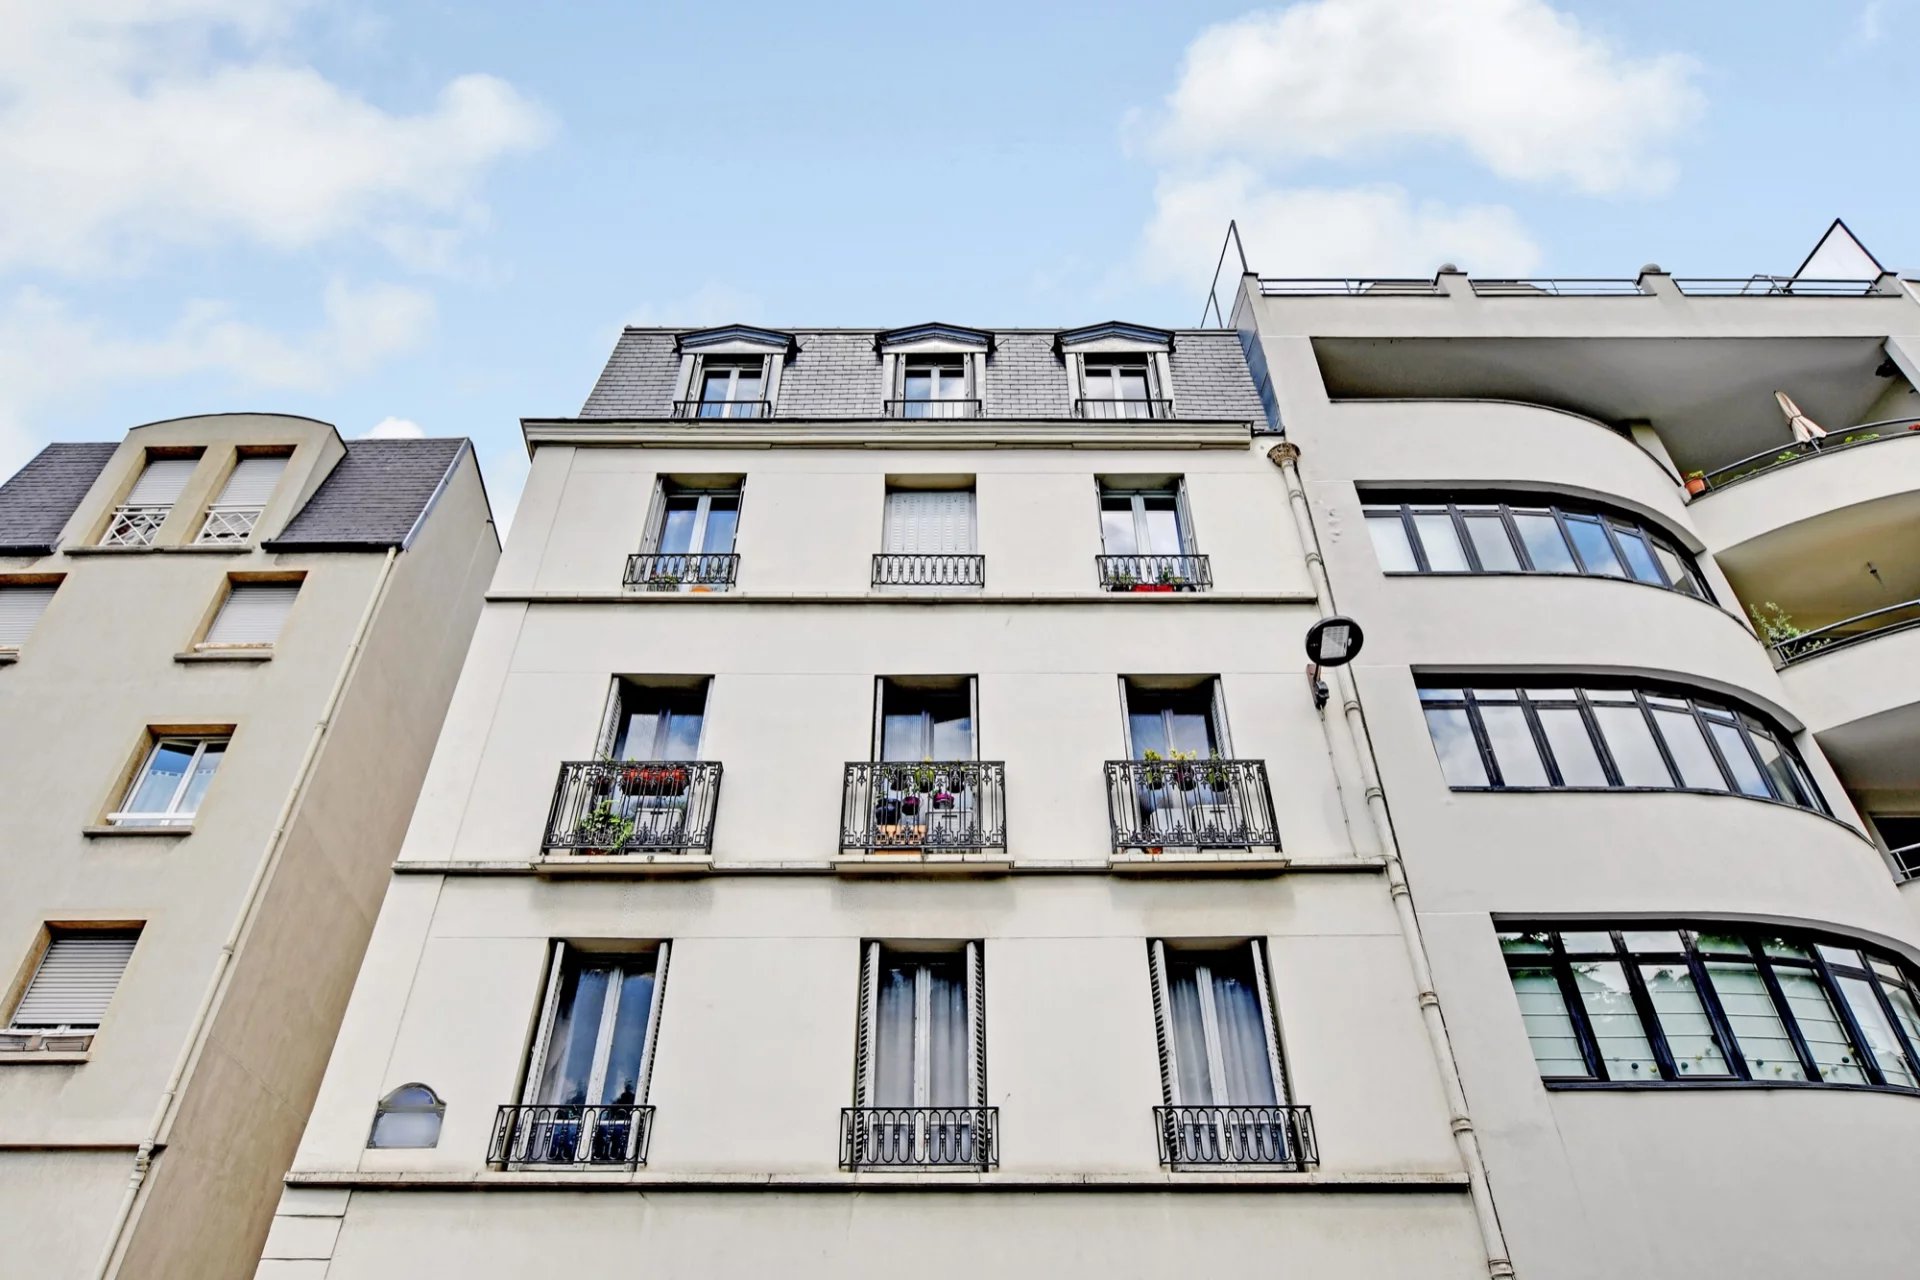 Sale Apartment - Paris 15th (Paris 15ème) Saint-Lambert